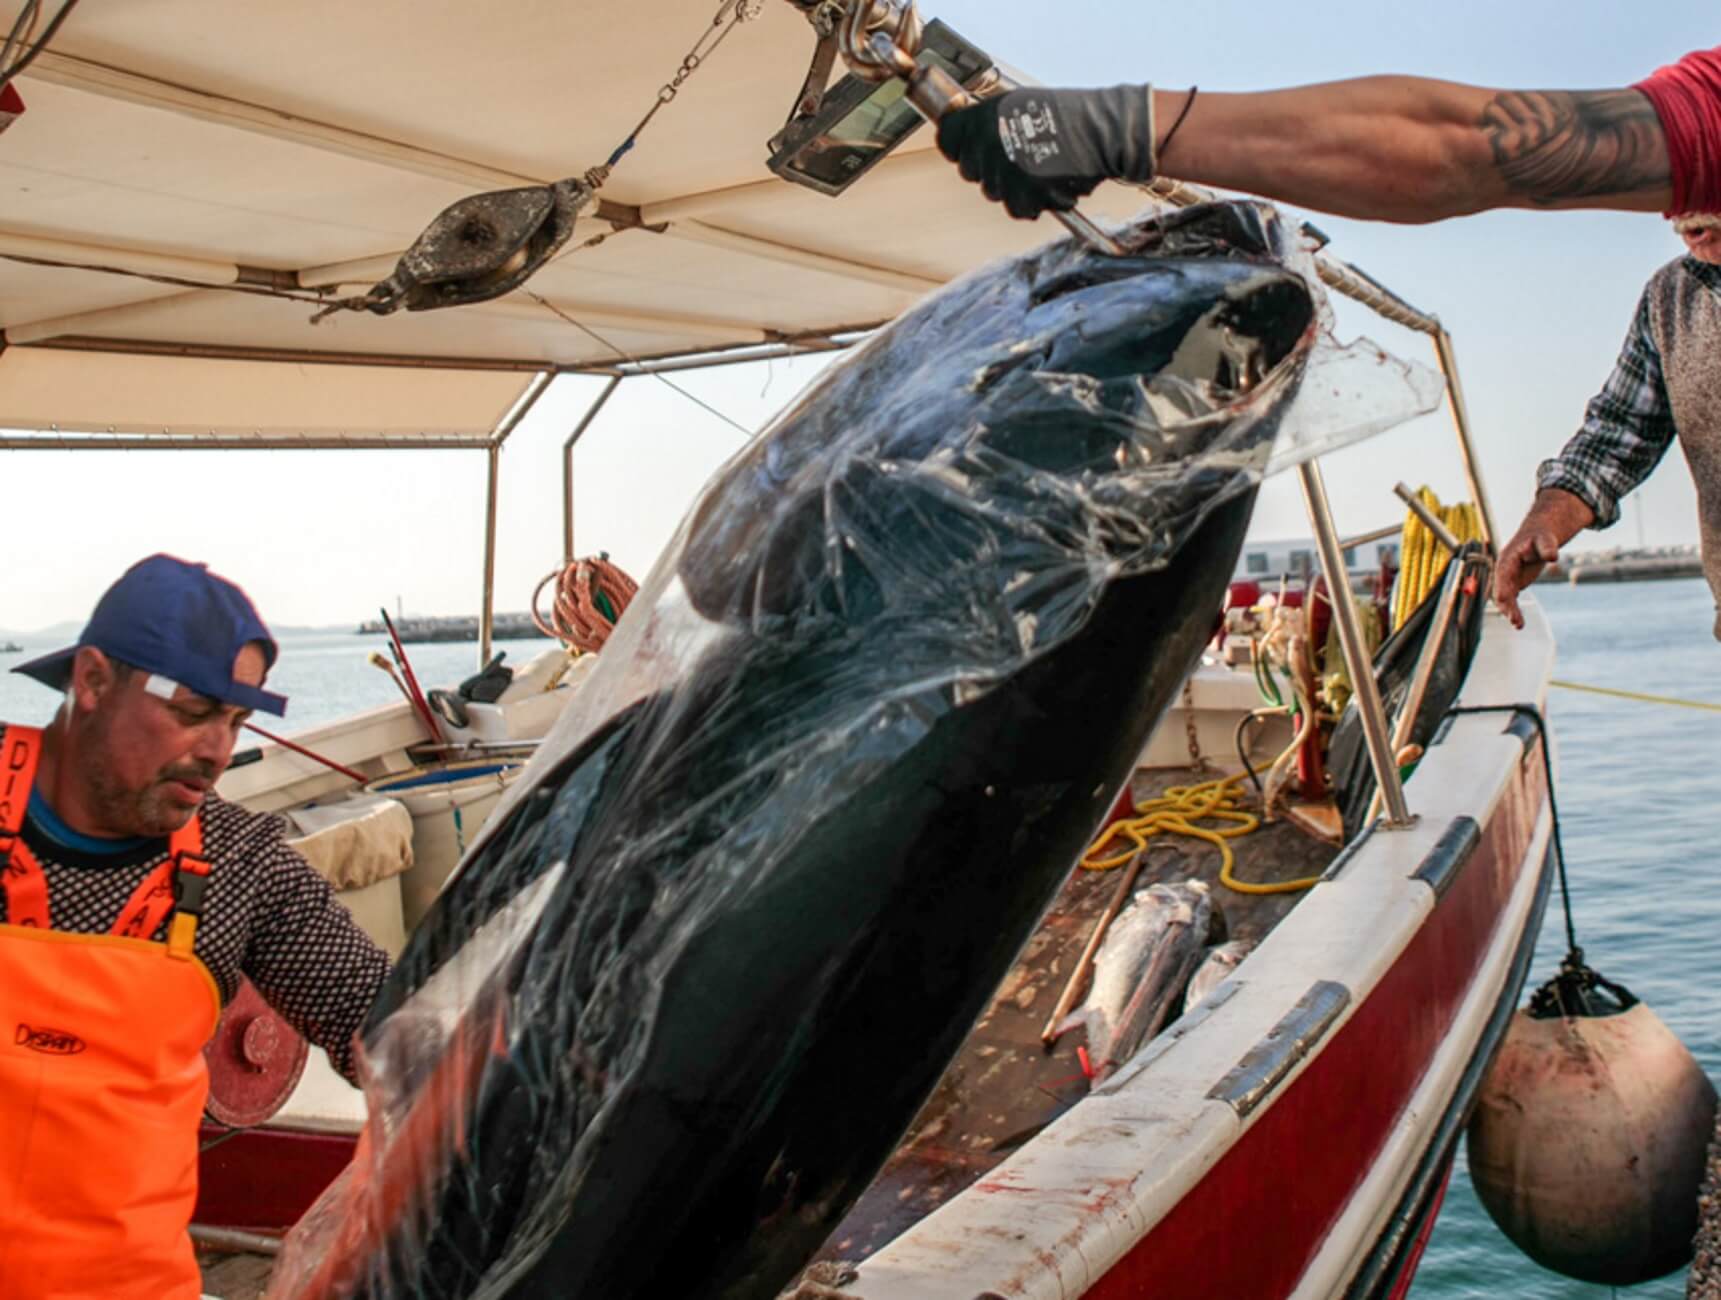 Νάξος: Η ψαριά ζύγιζε πάνω από 300 κιλά – Χρειάστηκε γερανός για να τα βγάλουν από το αλιευτικό [pics, video]